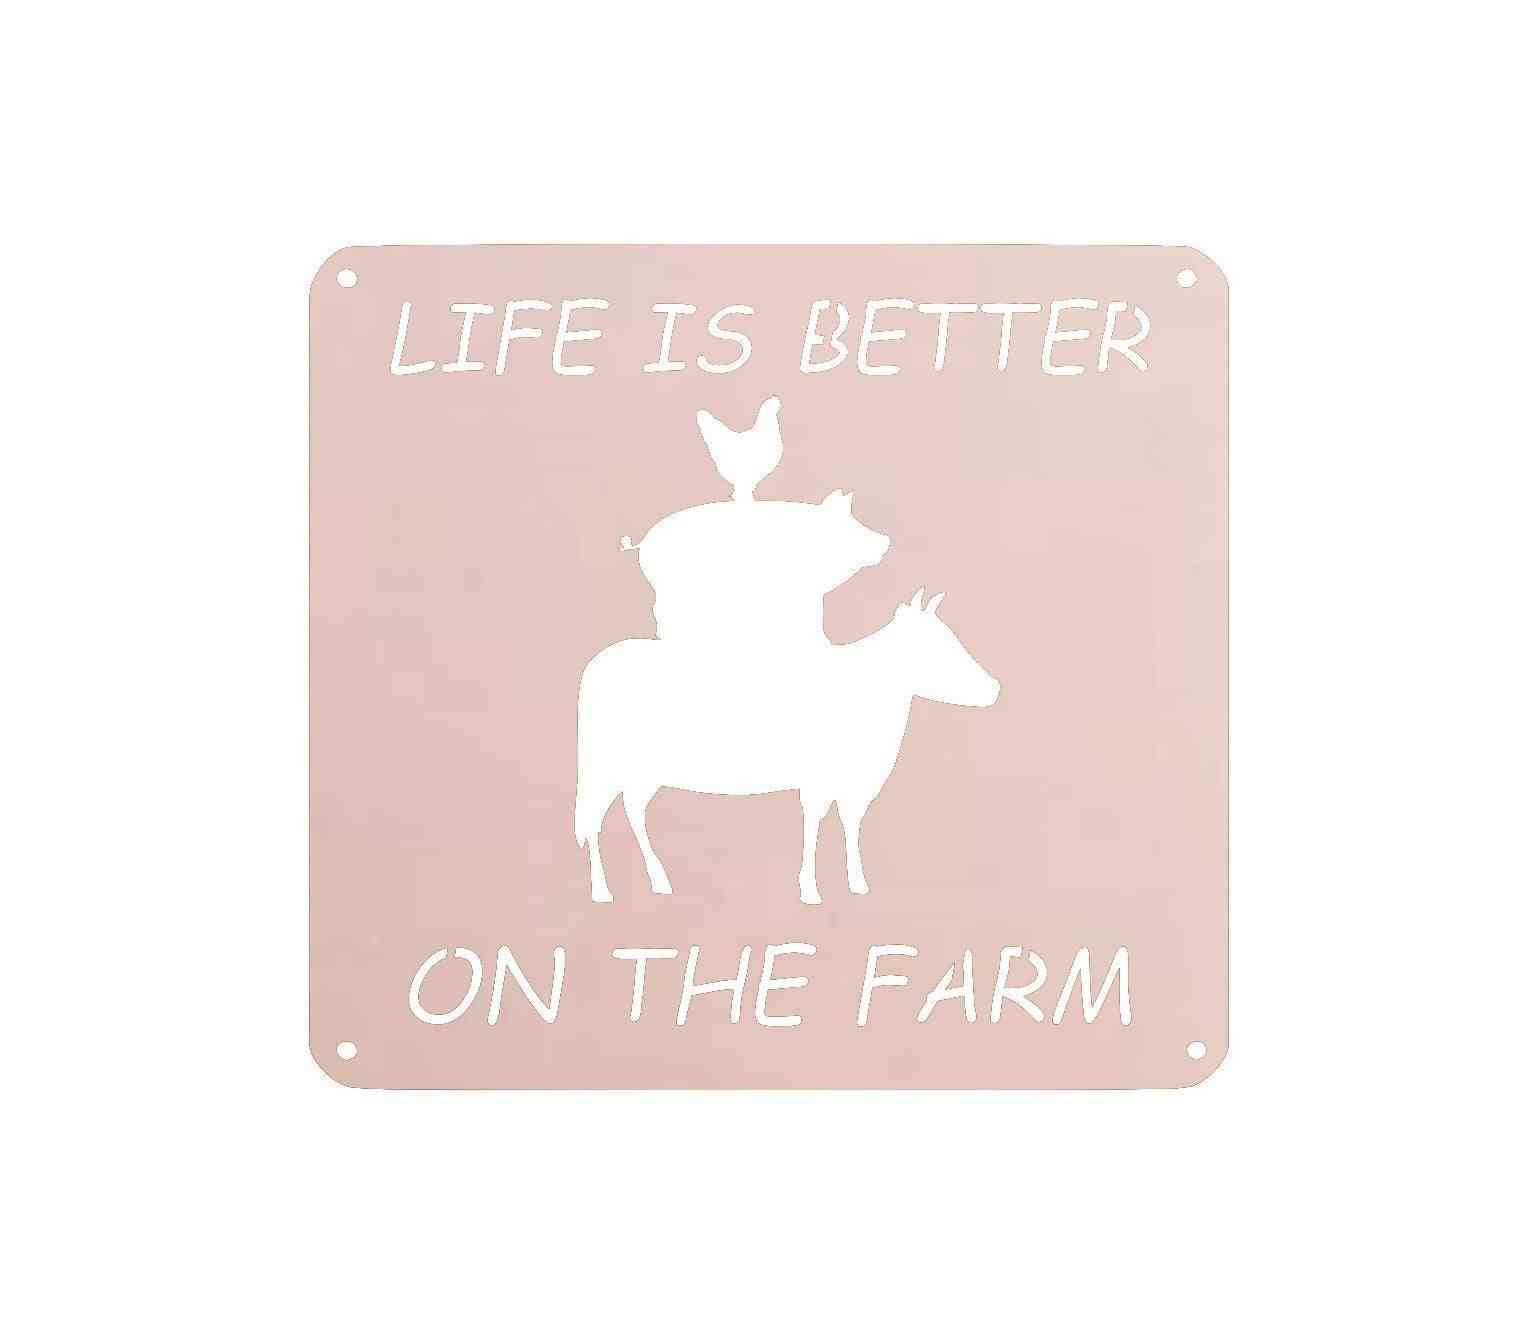 Het leven is beter op de muur van de boerderij